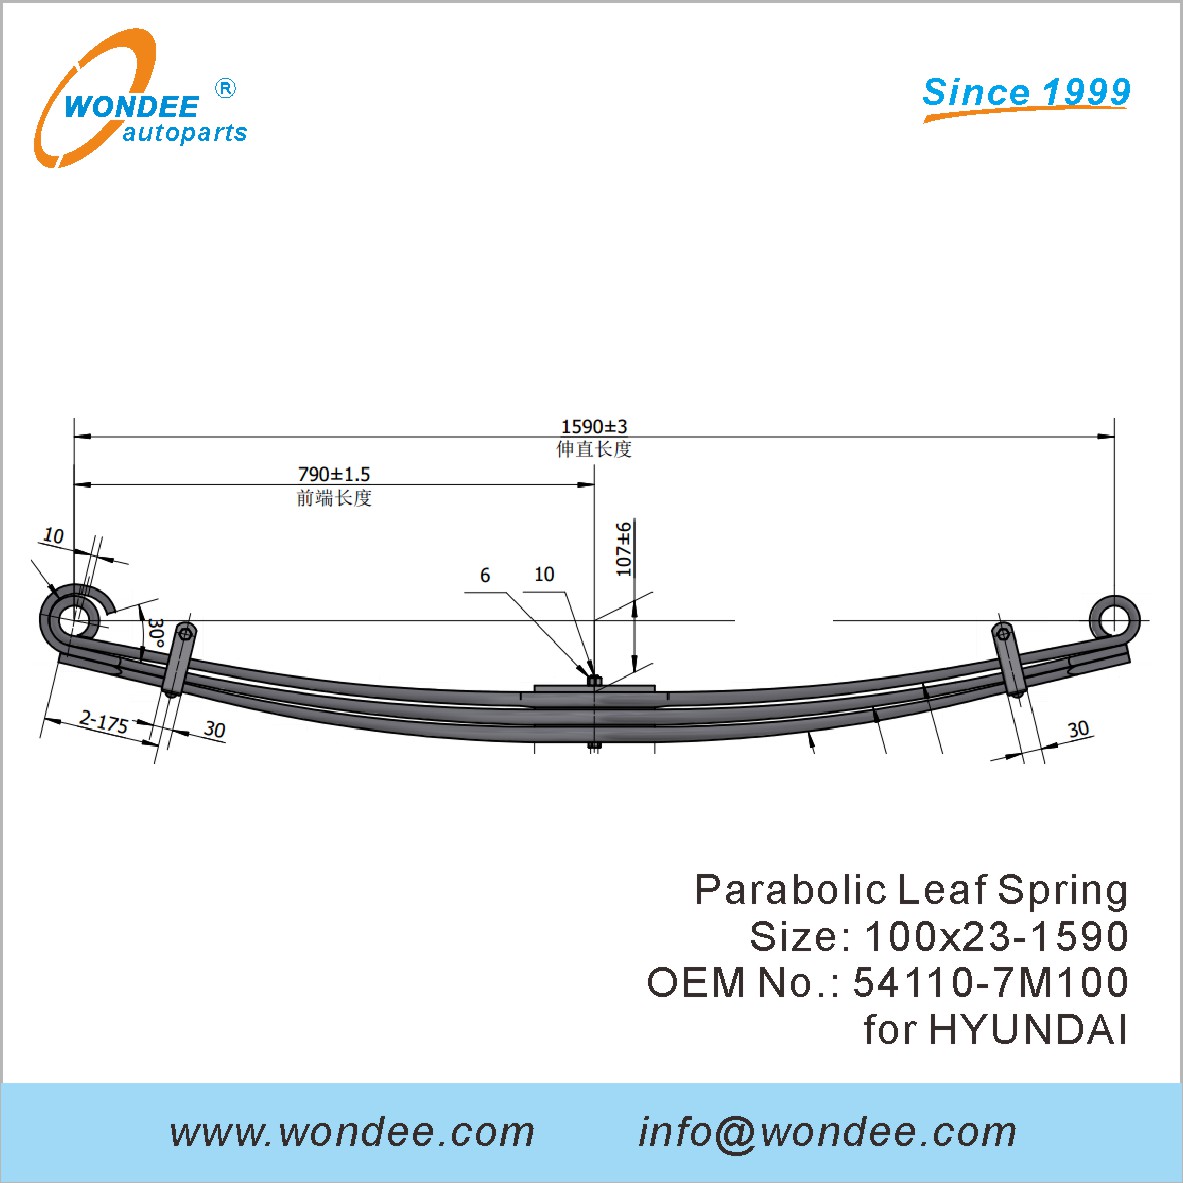 WONDEE heavy duty parabolic Leaf Spring OEM 54110-7M100 for HYUNDAI